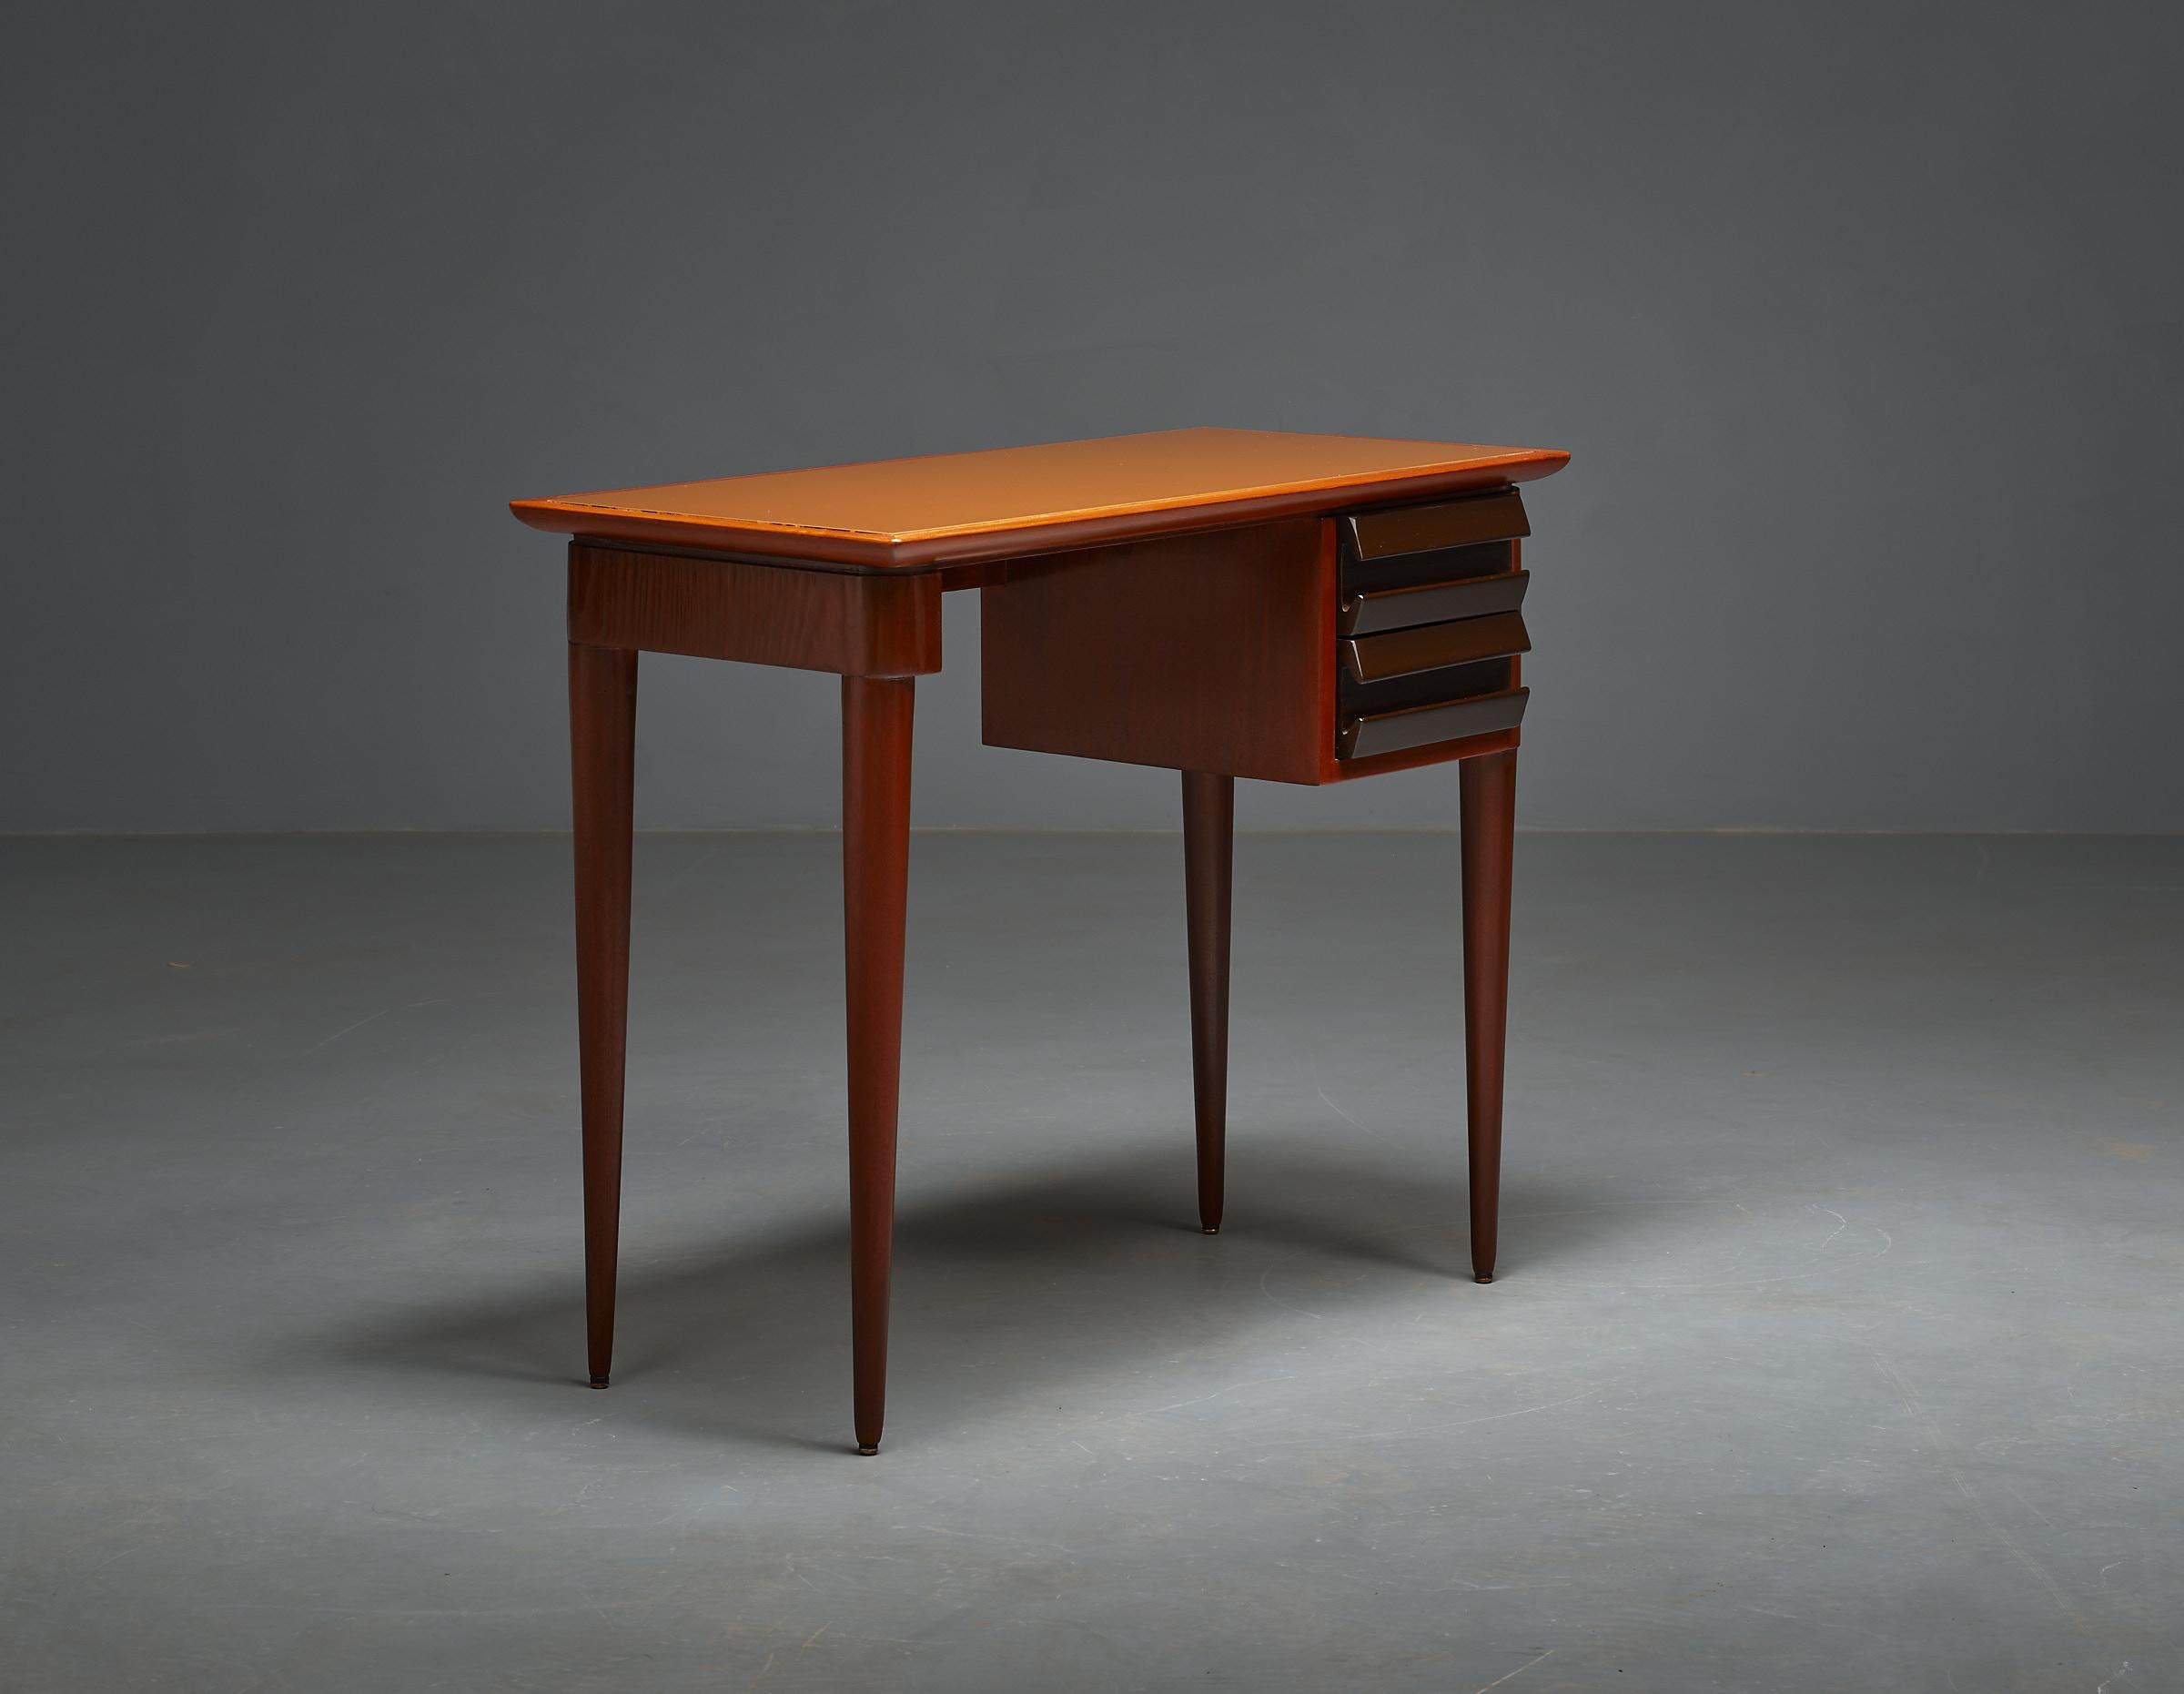 1950s Italian Design Desk by Vittorio Dassi - Exquisite, Elegant, and Restored 3